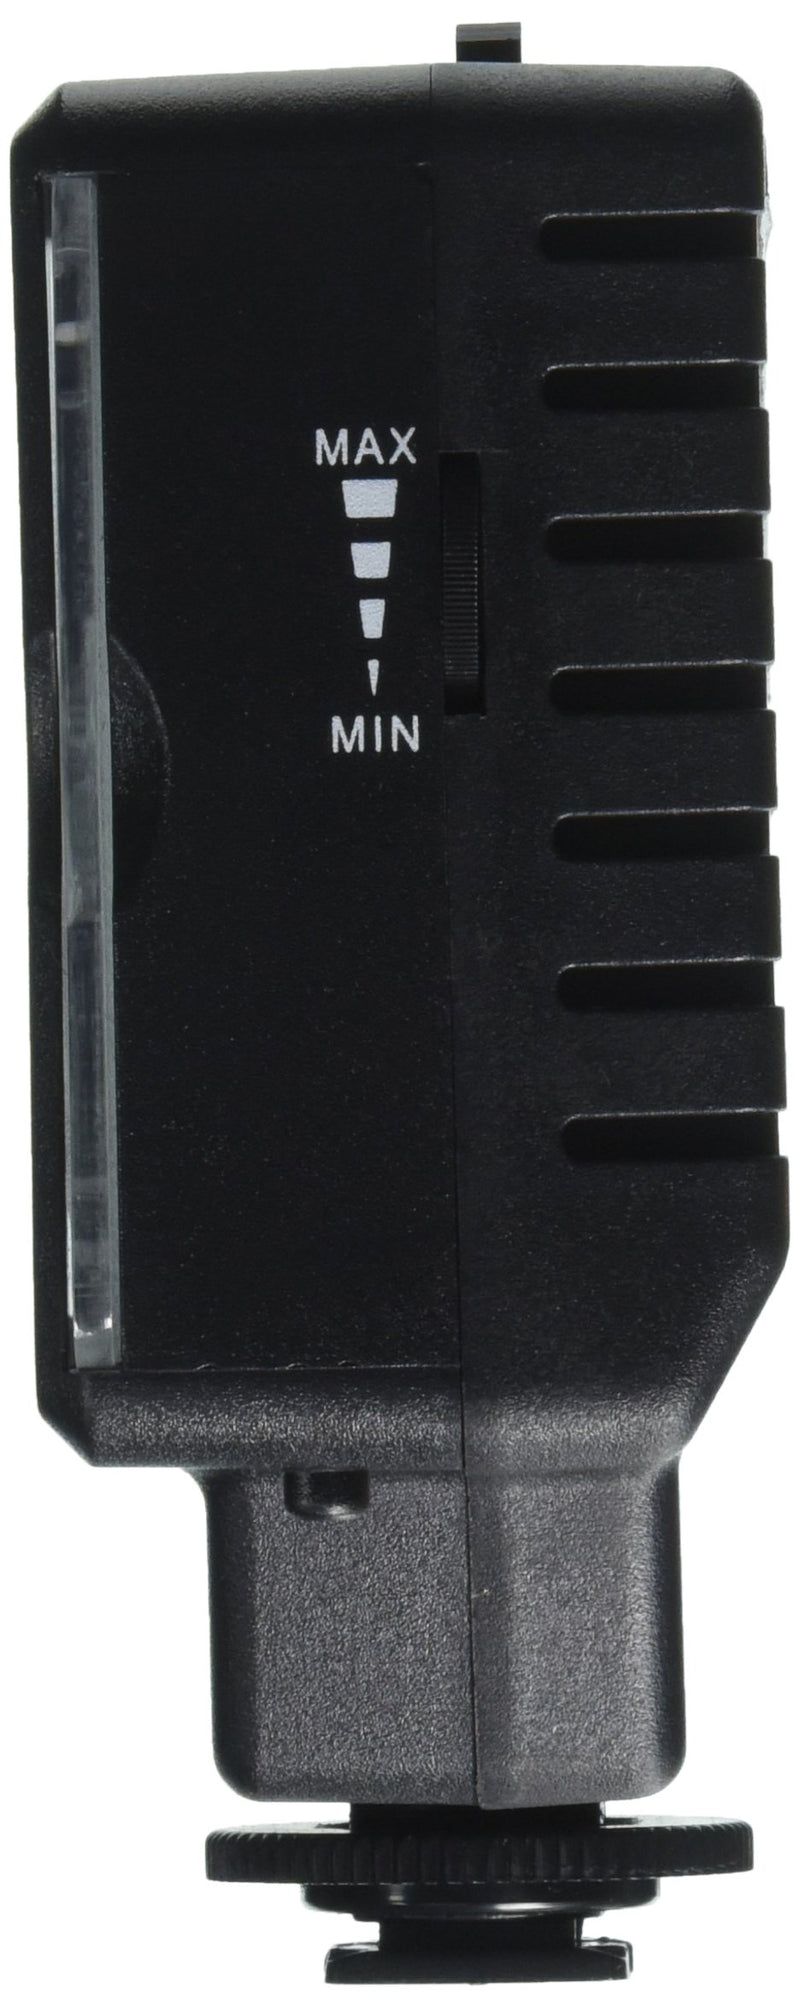 SUNPAK VL-LED-96 96-Led Video Light (Black)